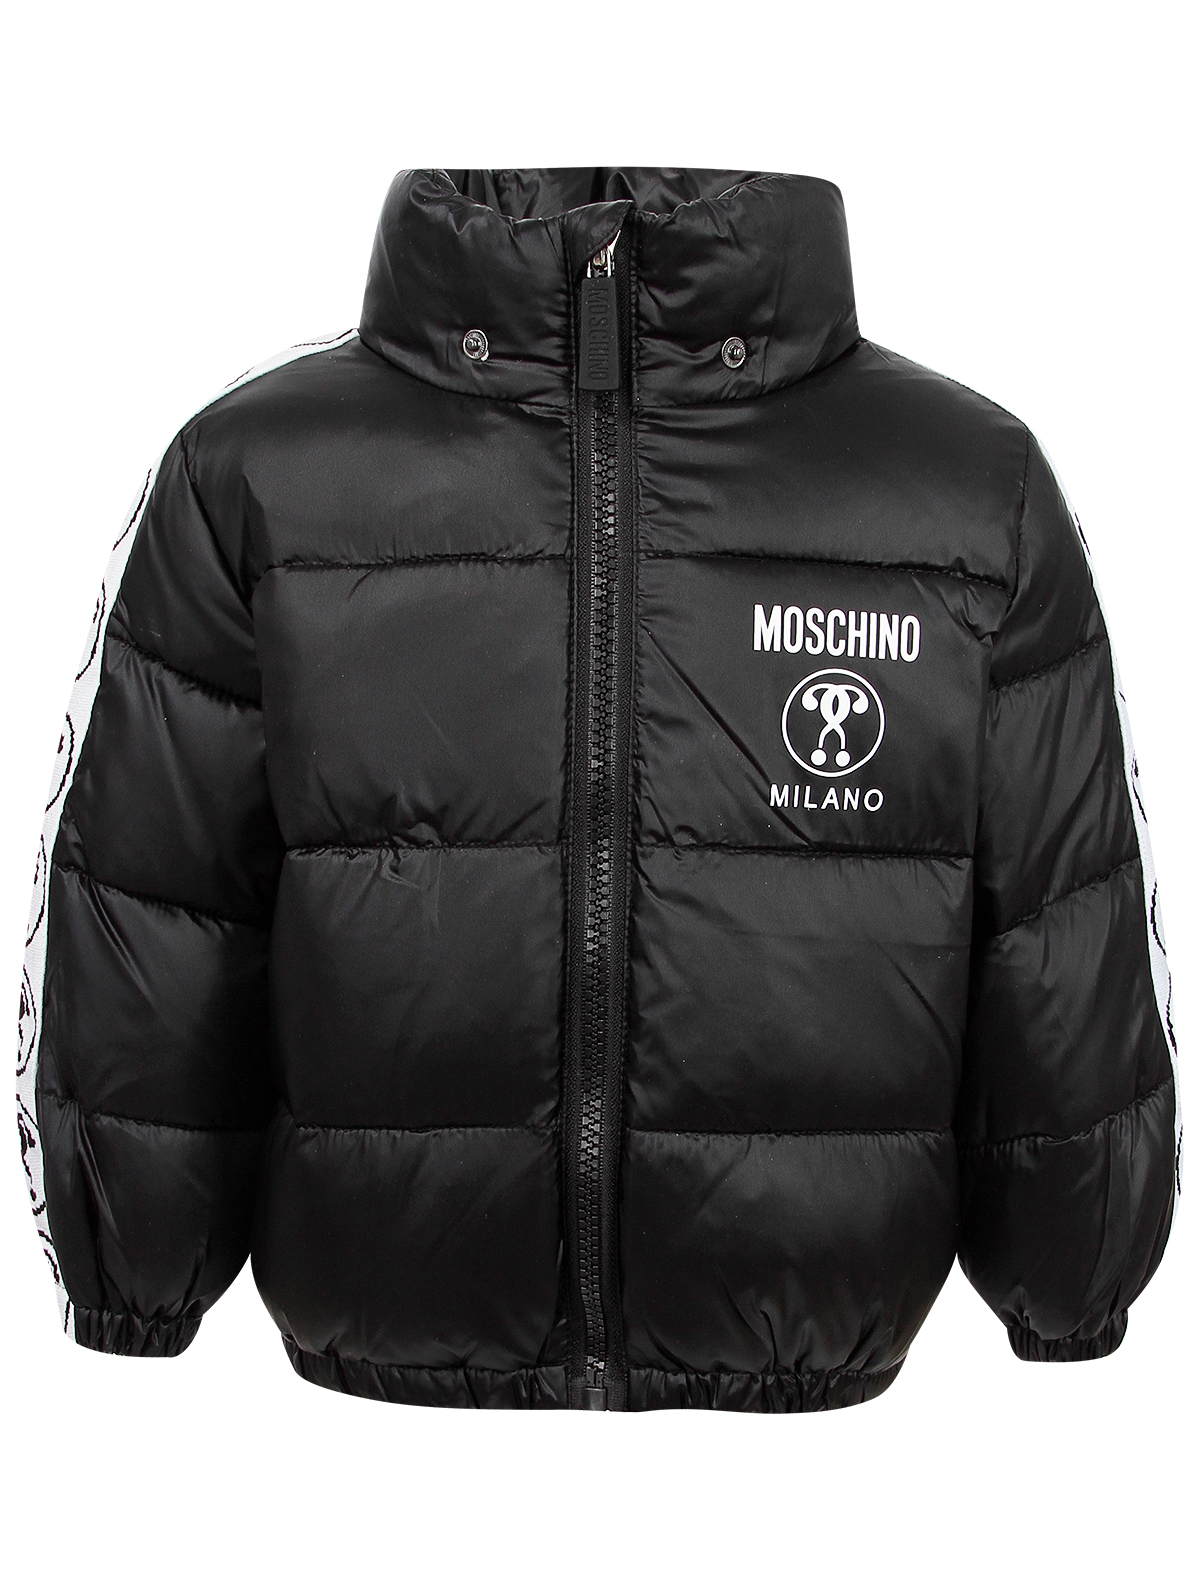 Куртка Moschino 2473963, цвет черный, размер 3 1074529280723 - фото 3